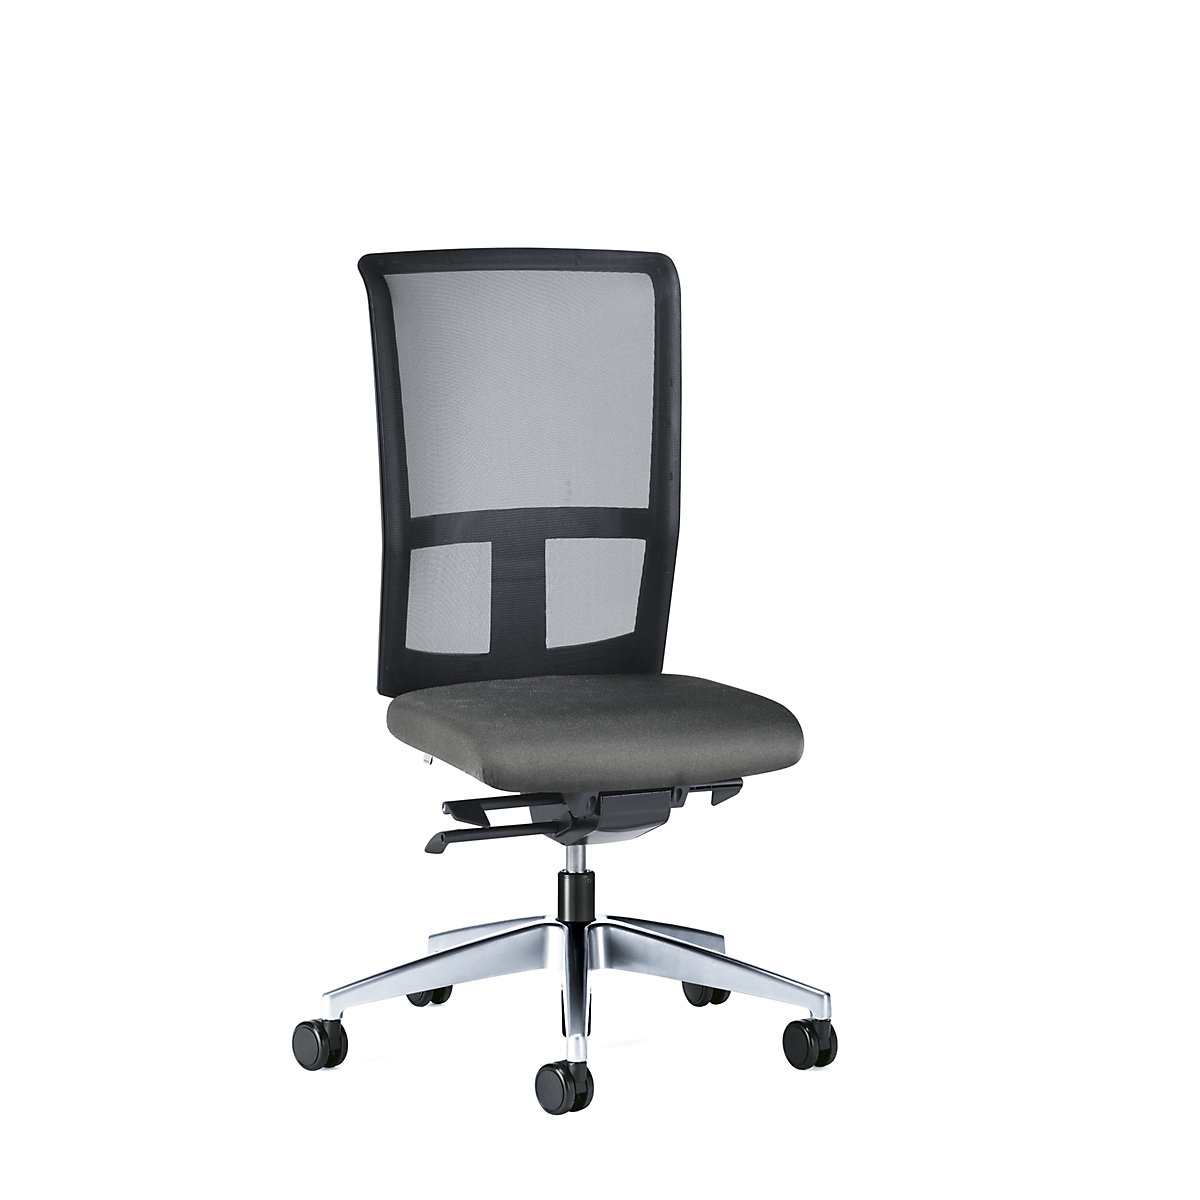 Bürodrehstuhl GOAL AIR, Rückenlehnenhöhe 545 mm interstuhl, Gestell poliert, mit weichen Rollen, eisengrau, Sitztiefe 410 mm